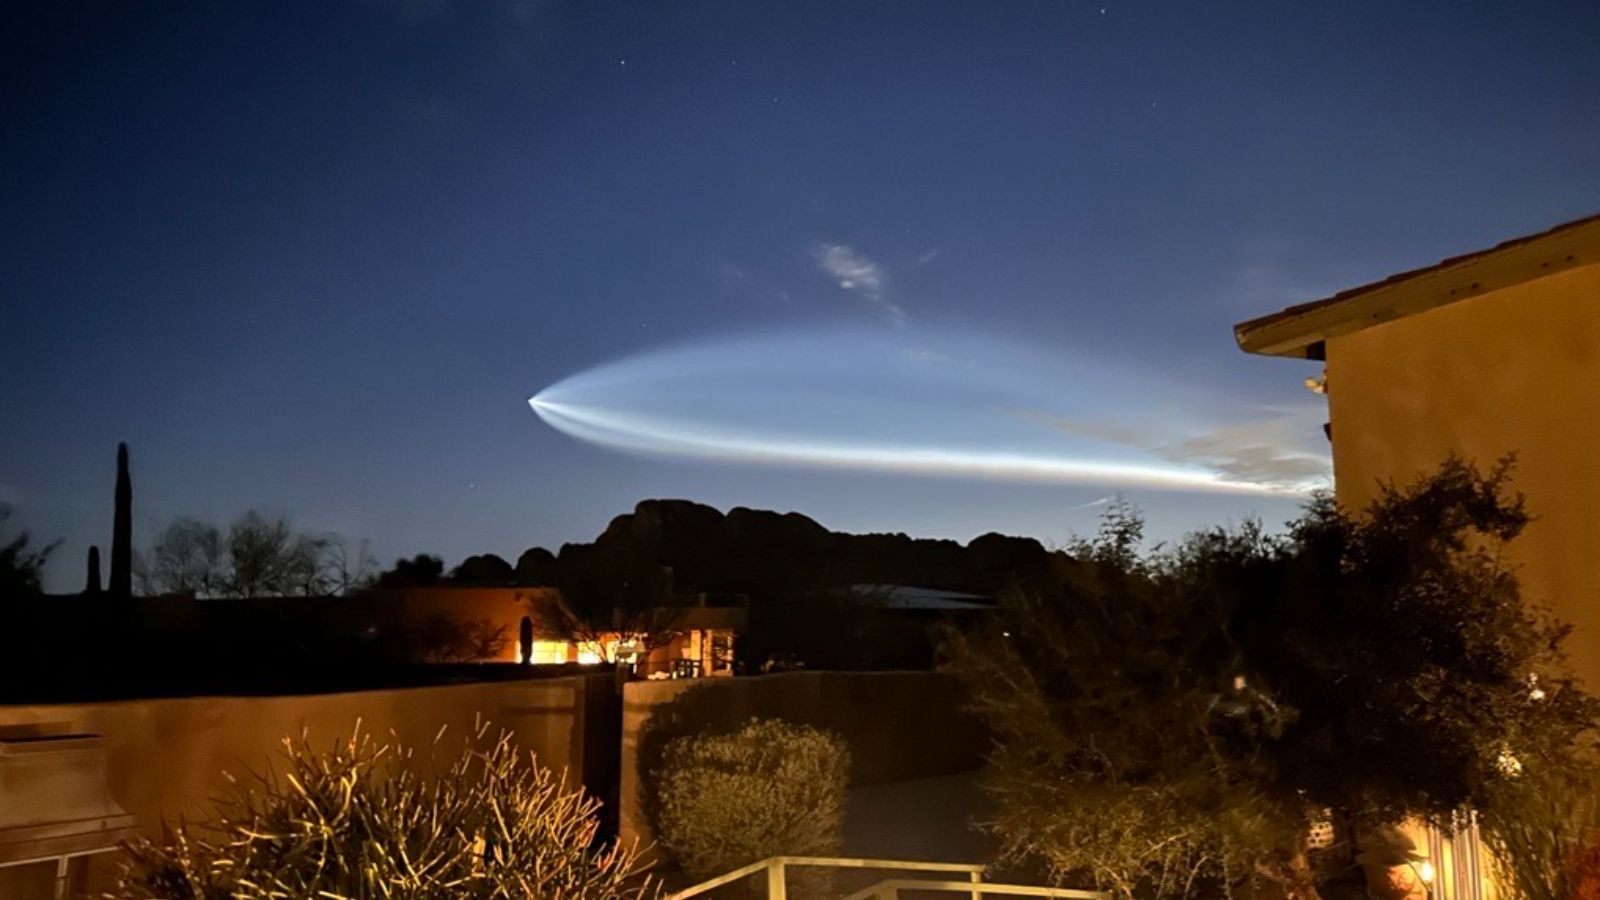 Giant rocket from Space X Falcon 9 rocket seen in Phoenix...